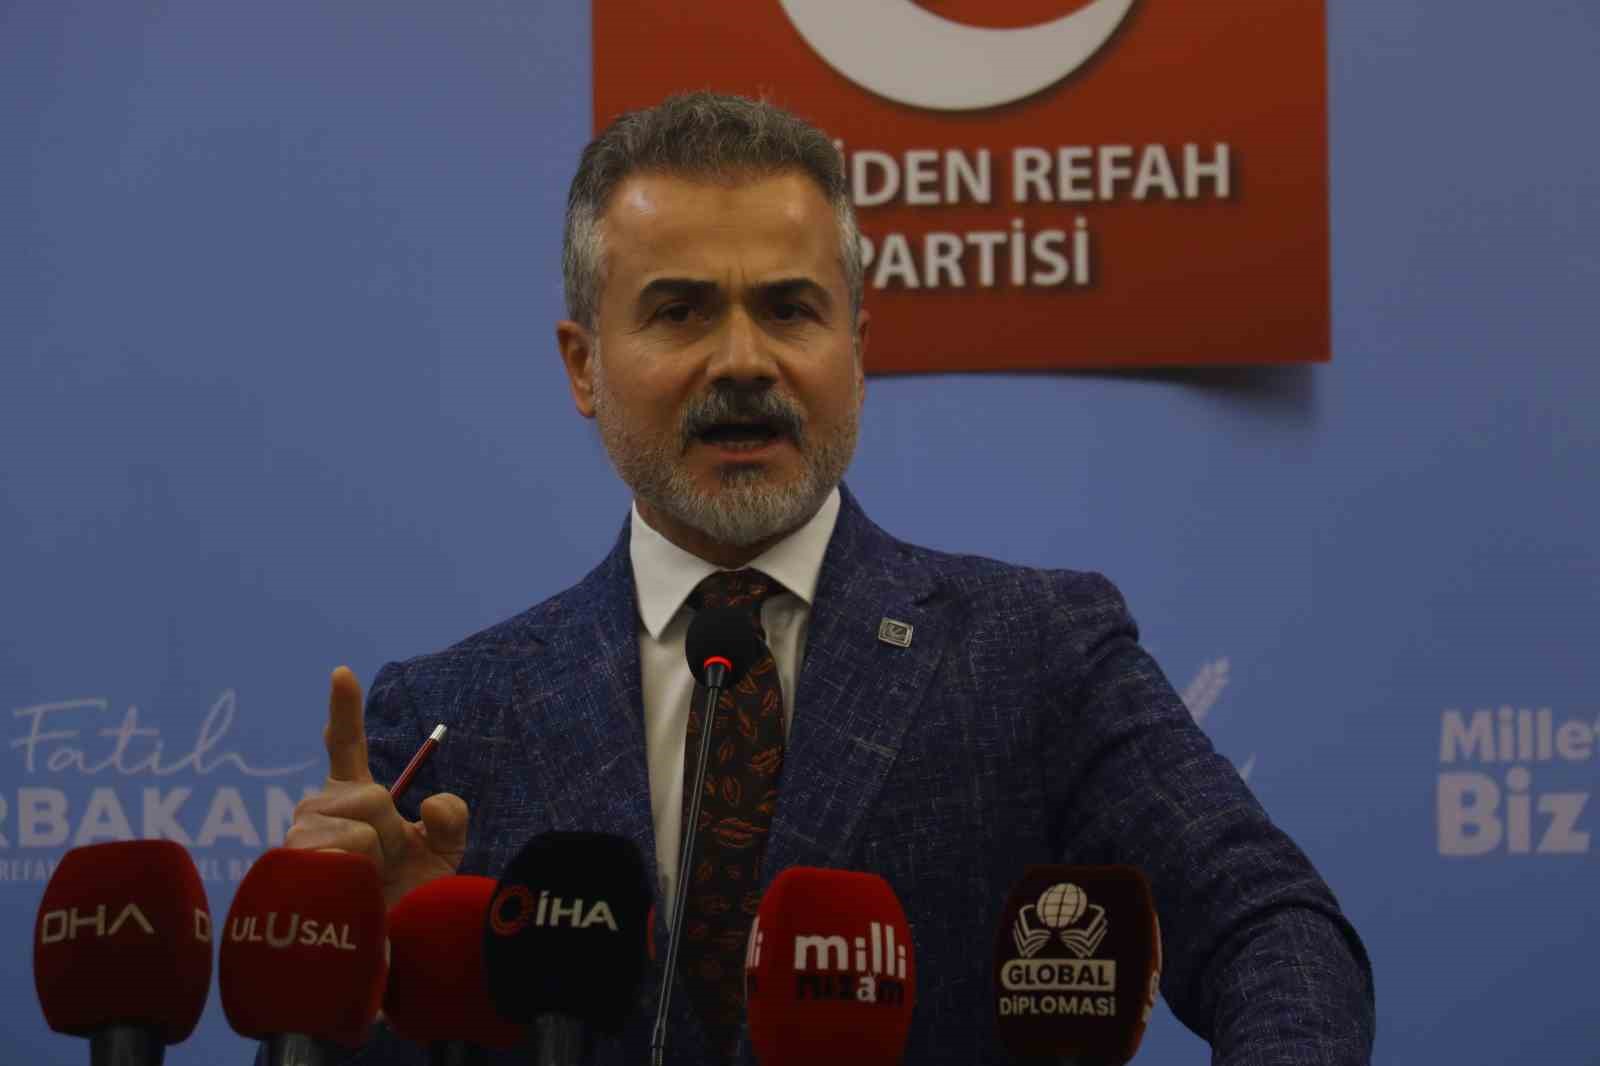 Yeniden Refah Partisi Genel Başkan Yardımcısı Kılıç: “Türkiye Büyük Millet Meclisi, gazi bir meclistir”
